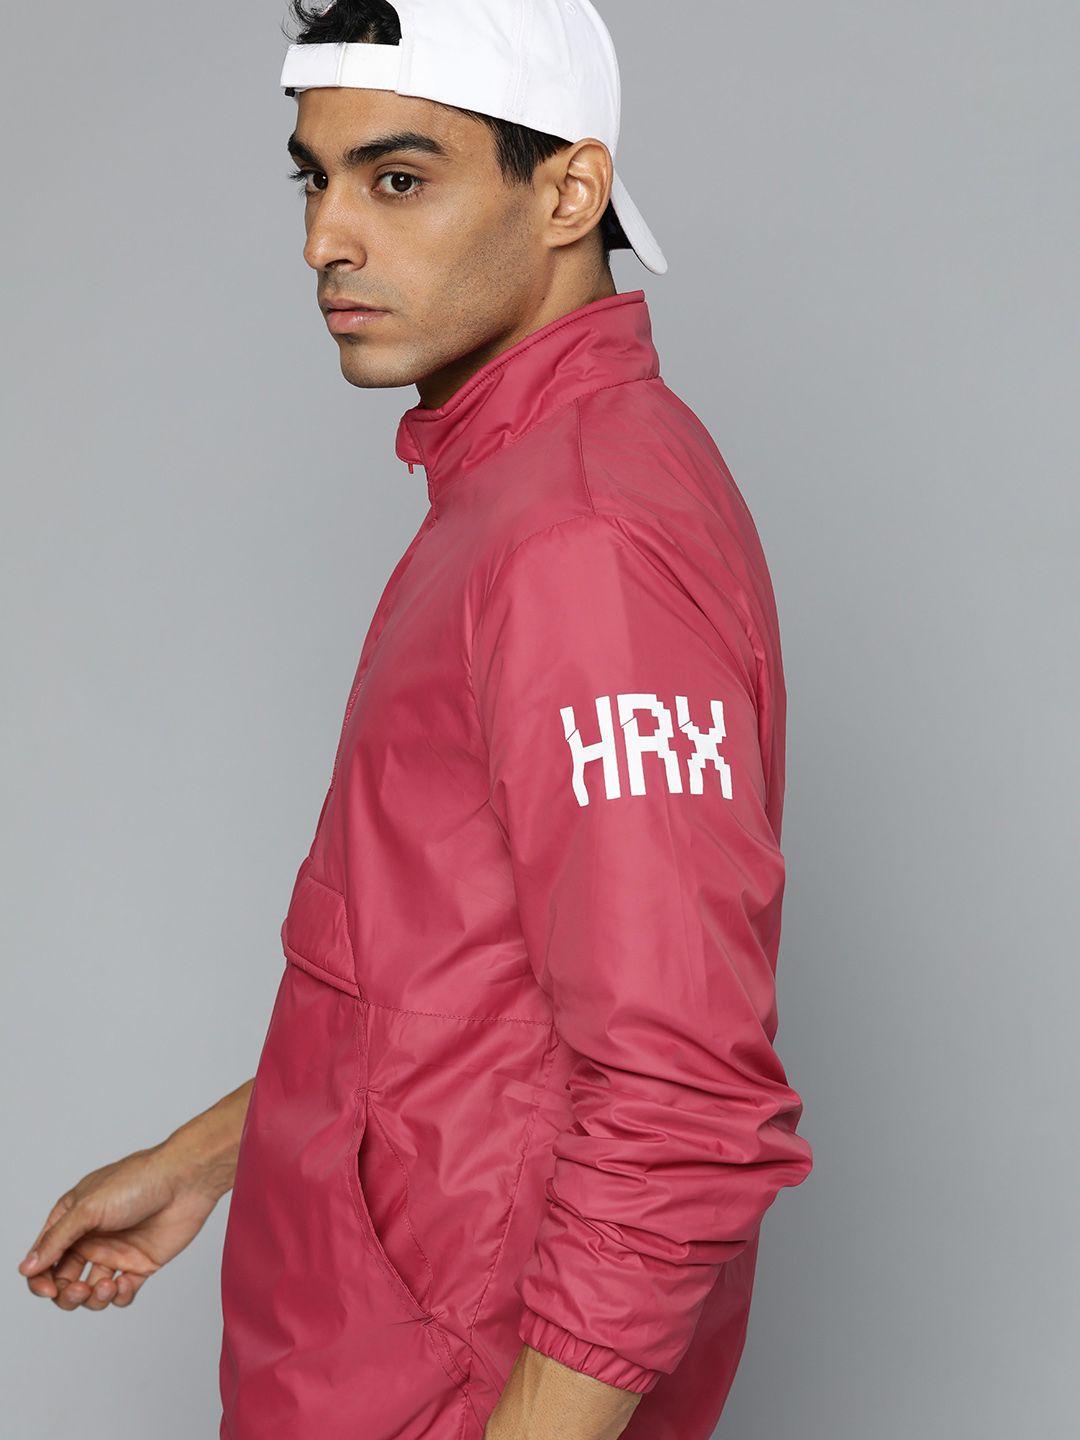 hrx by hrithik roshan men pink tailored jacket